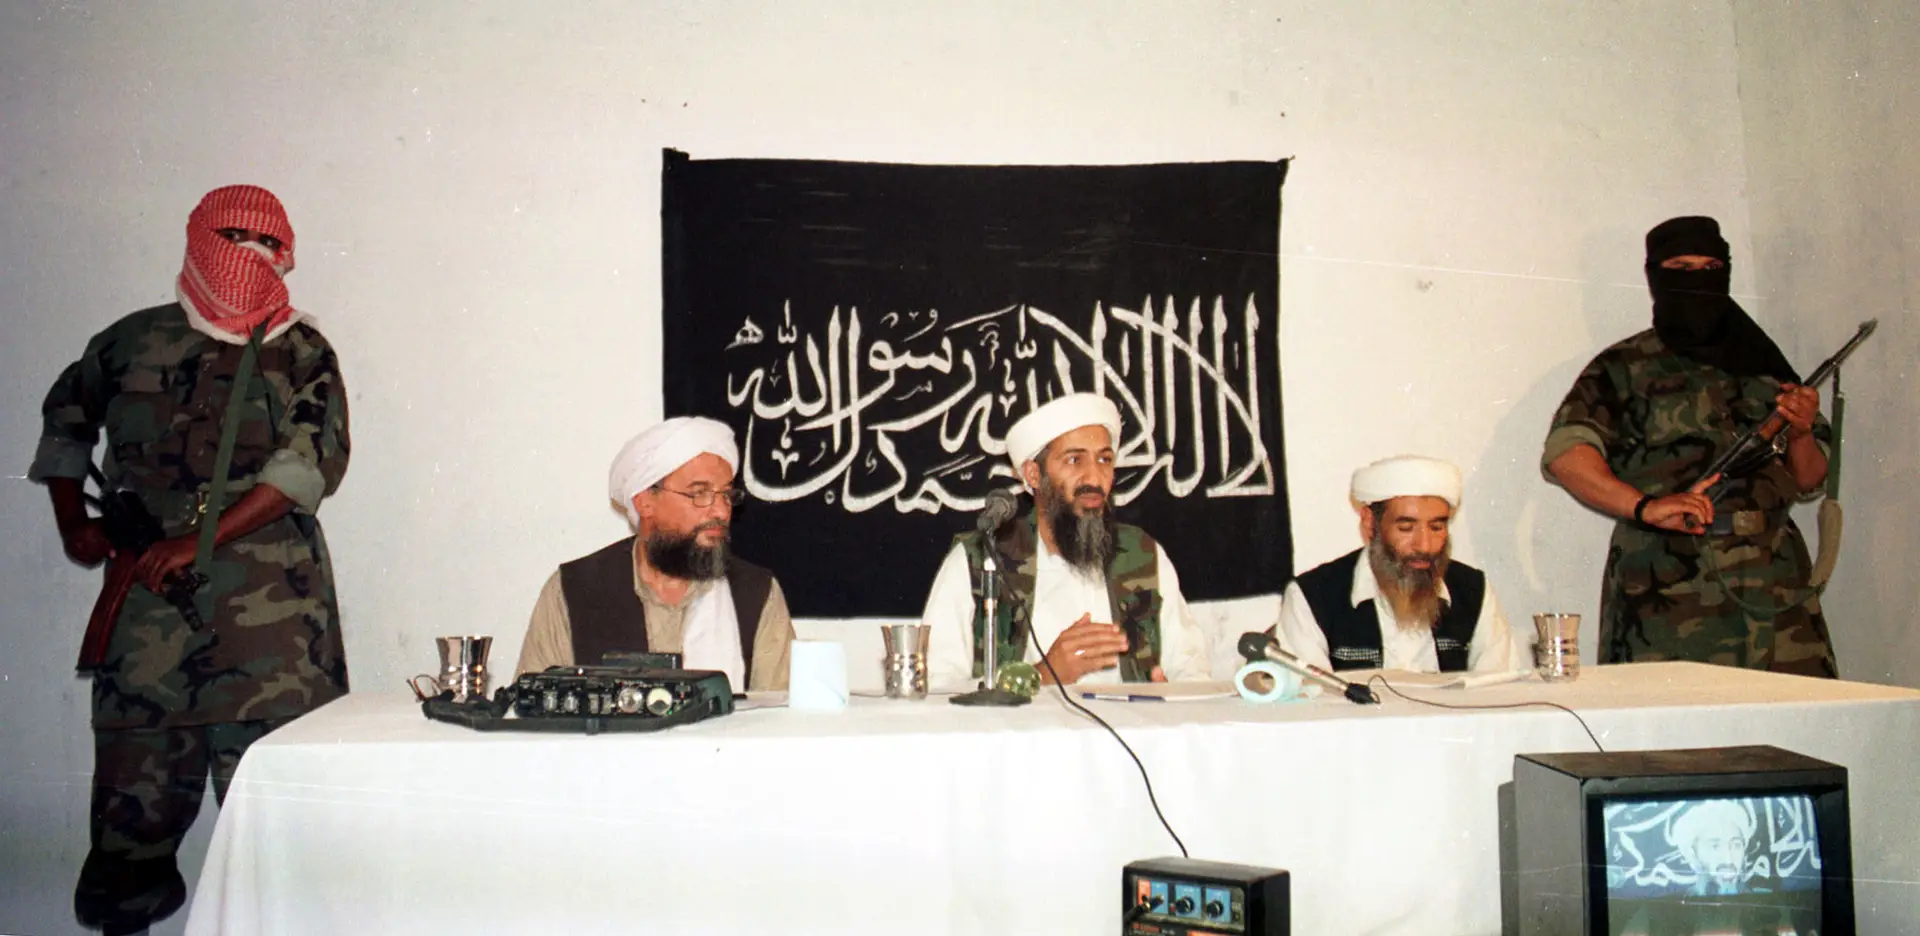 Operação de contraterrorismo “bem-sucedida”: EUA anunciam morte de líder da Al-Qaeda